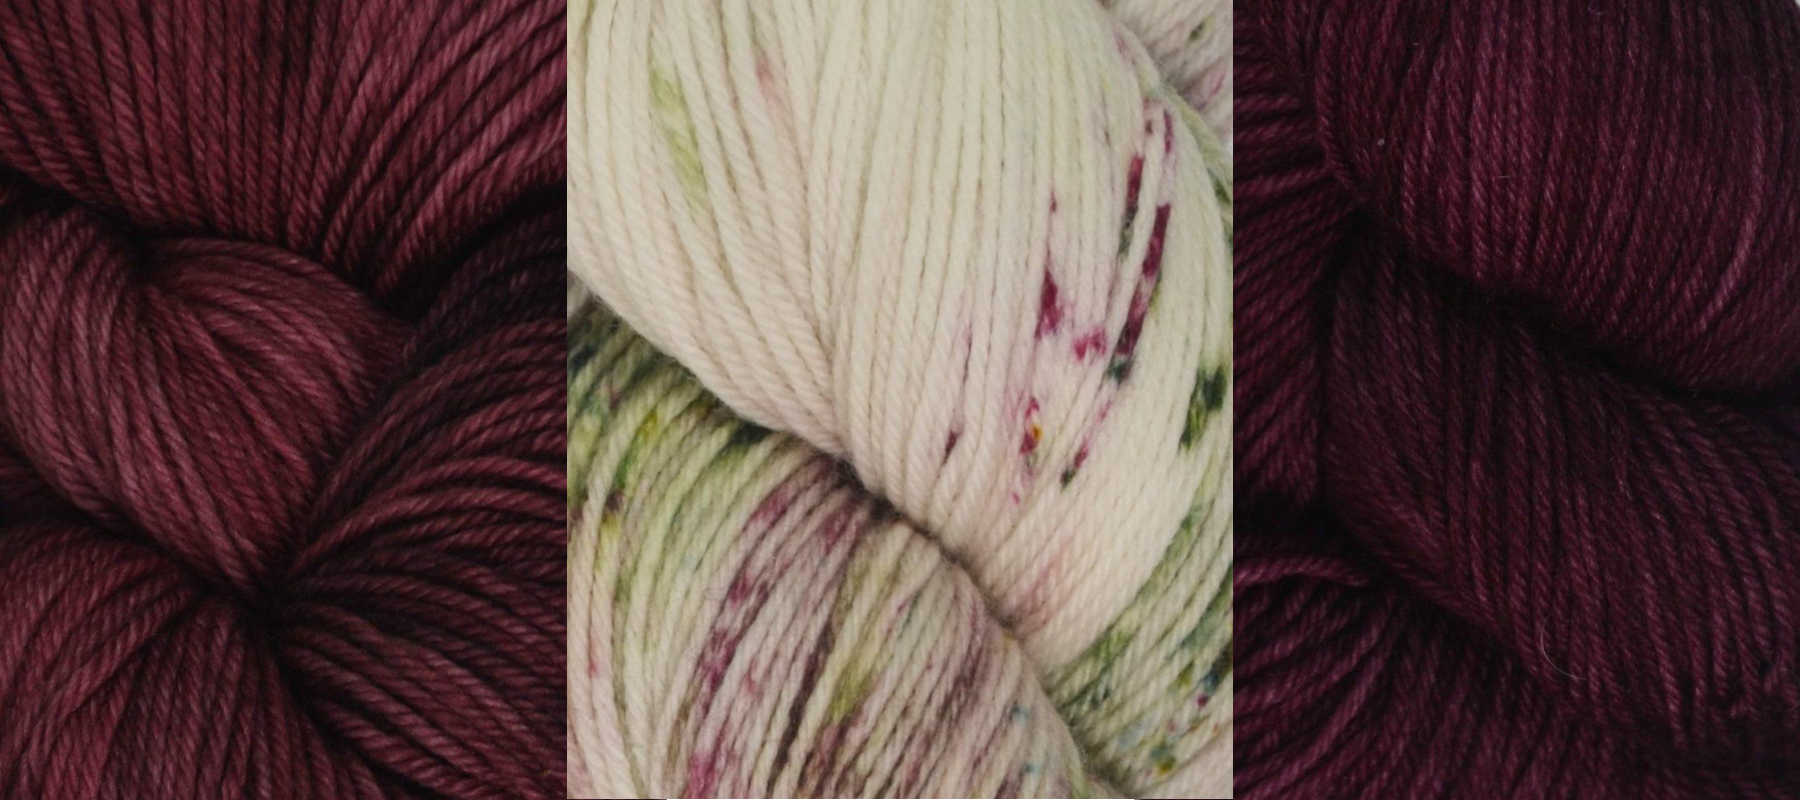 Our New Yarn: Sasquatch from Coeur d'Alene Yarns